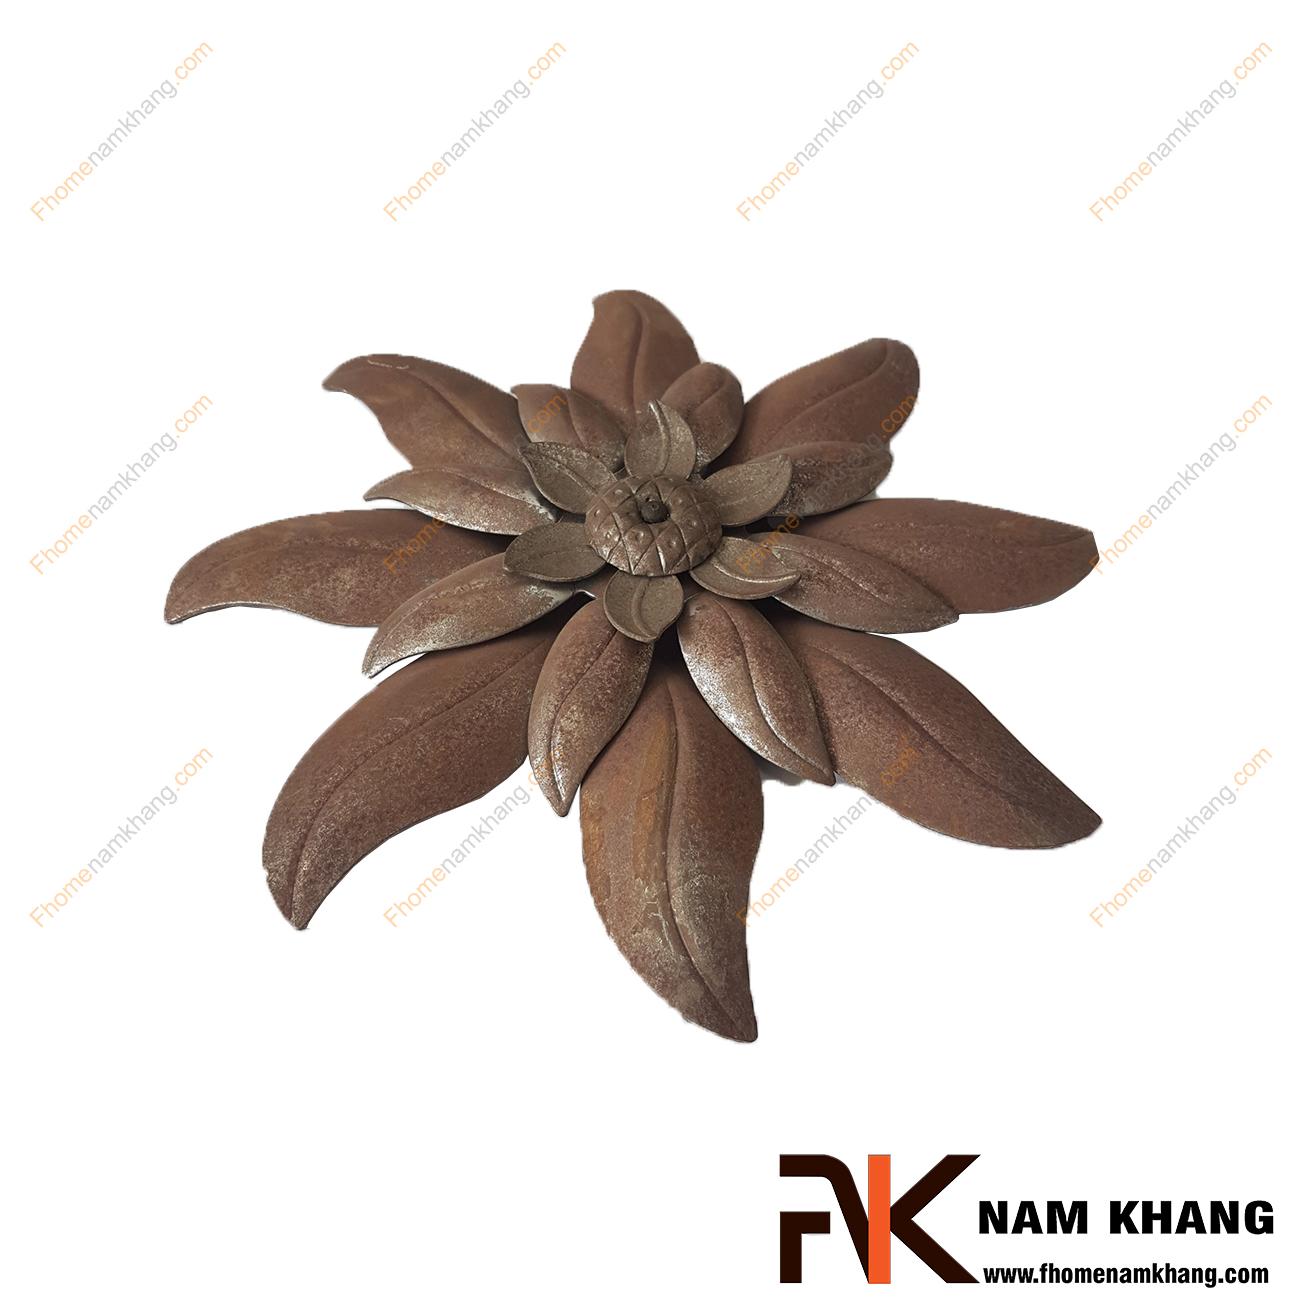 Hoa lá thép dập NKS-120 được tạo hình bông hoa, là phụ kiện trang trí dành cho các sản phẩm sắt uốn mỹ thuật  Chi tiết được dập nỗi trên bề mặt, mô phỏng chính xác chi tiết thực tế.